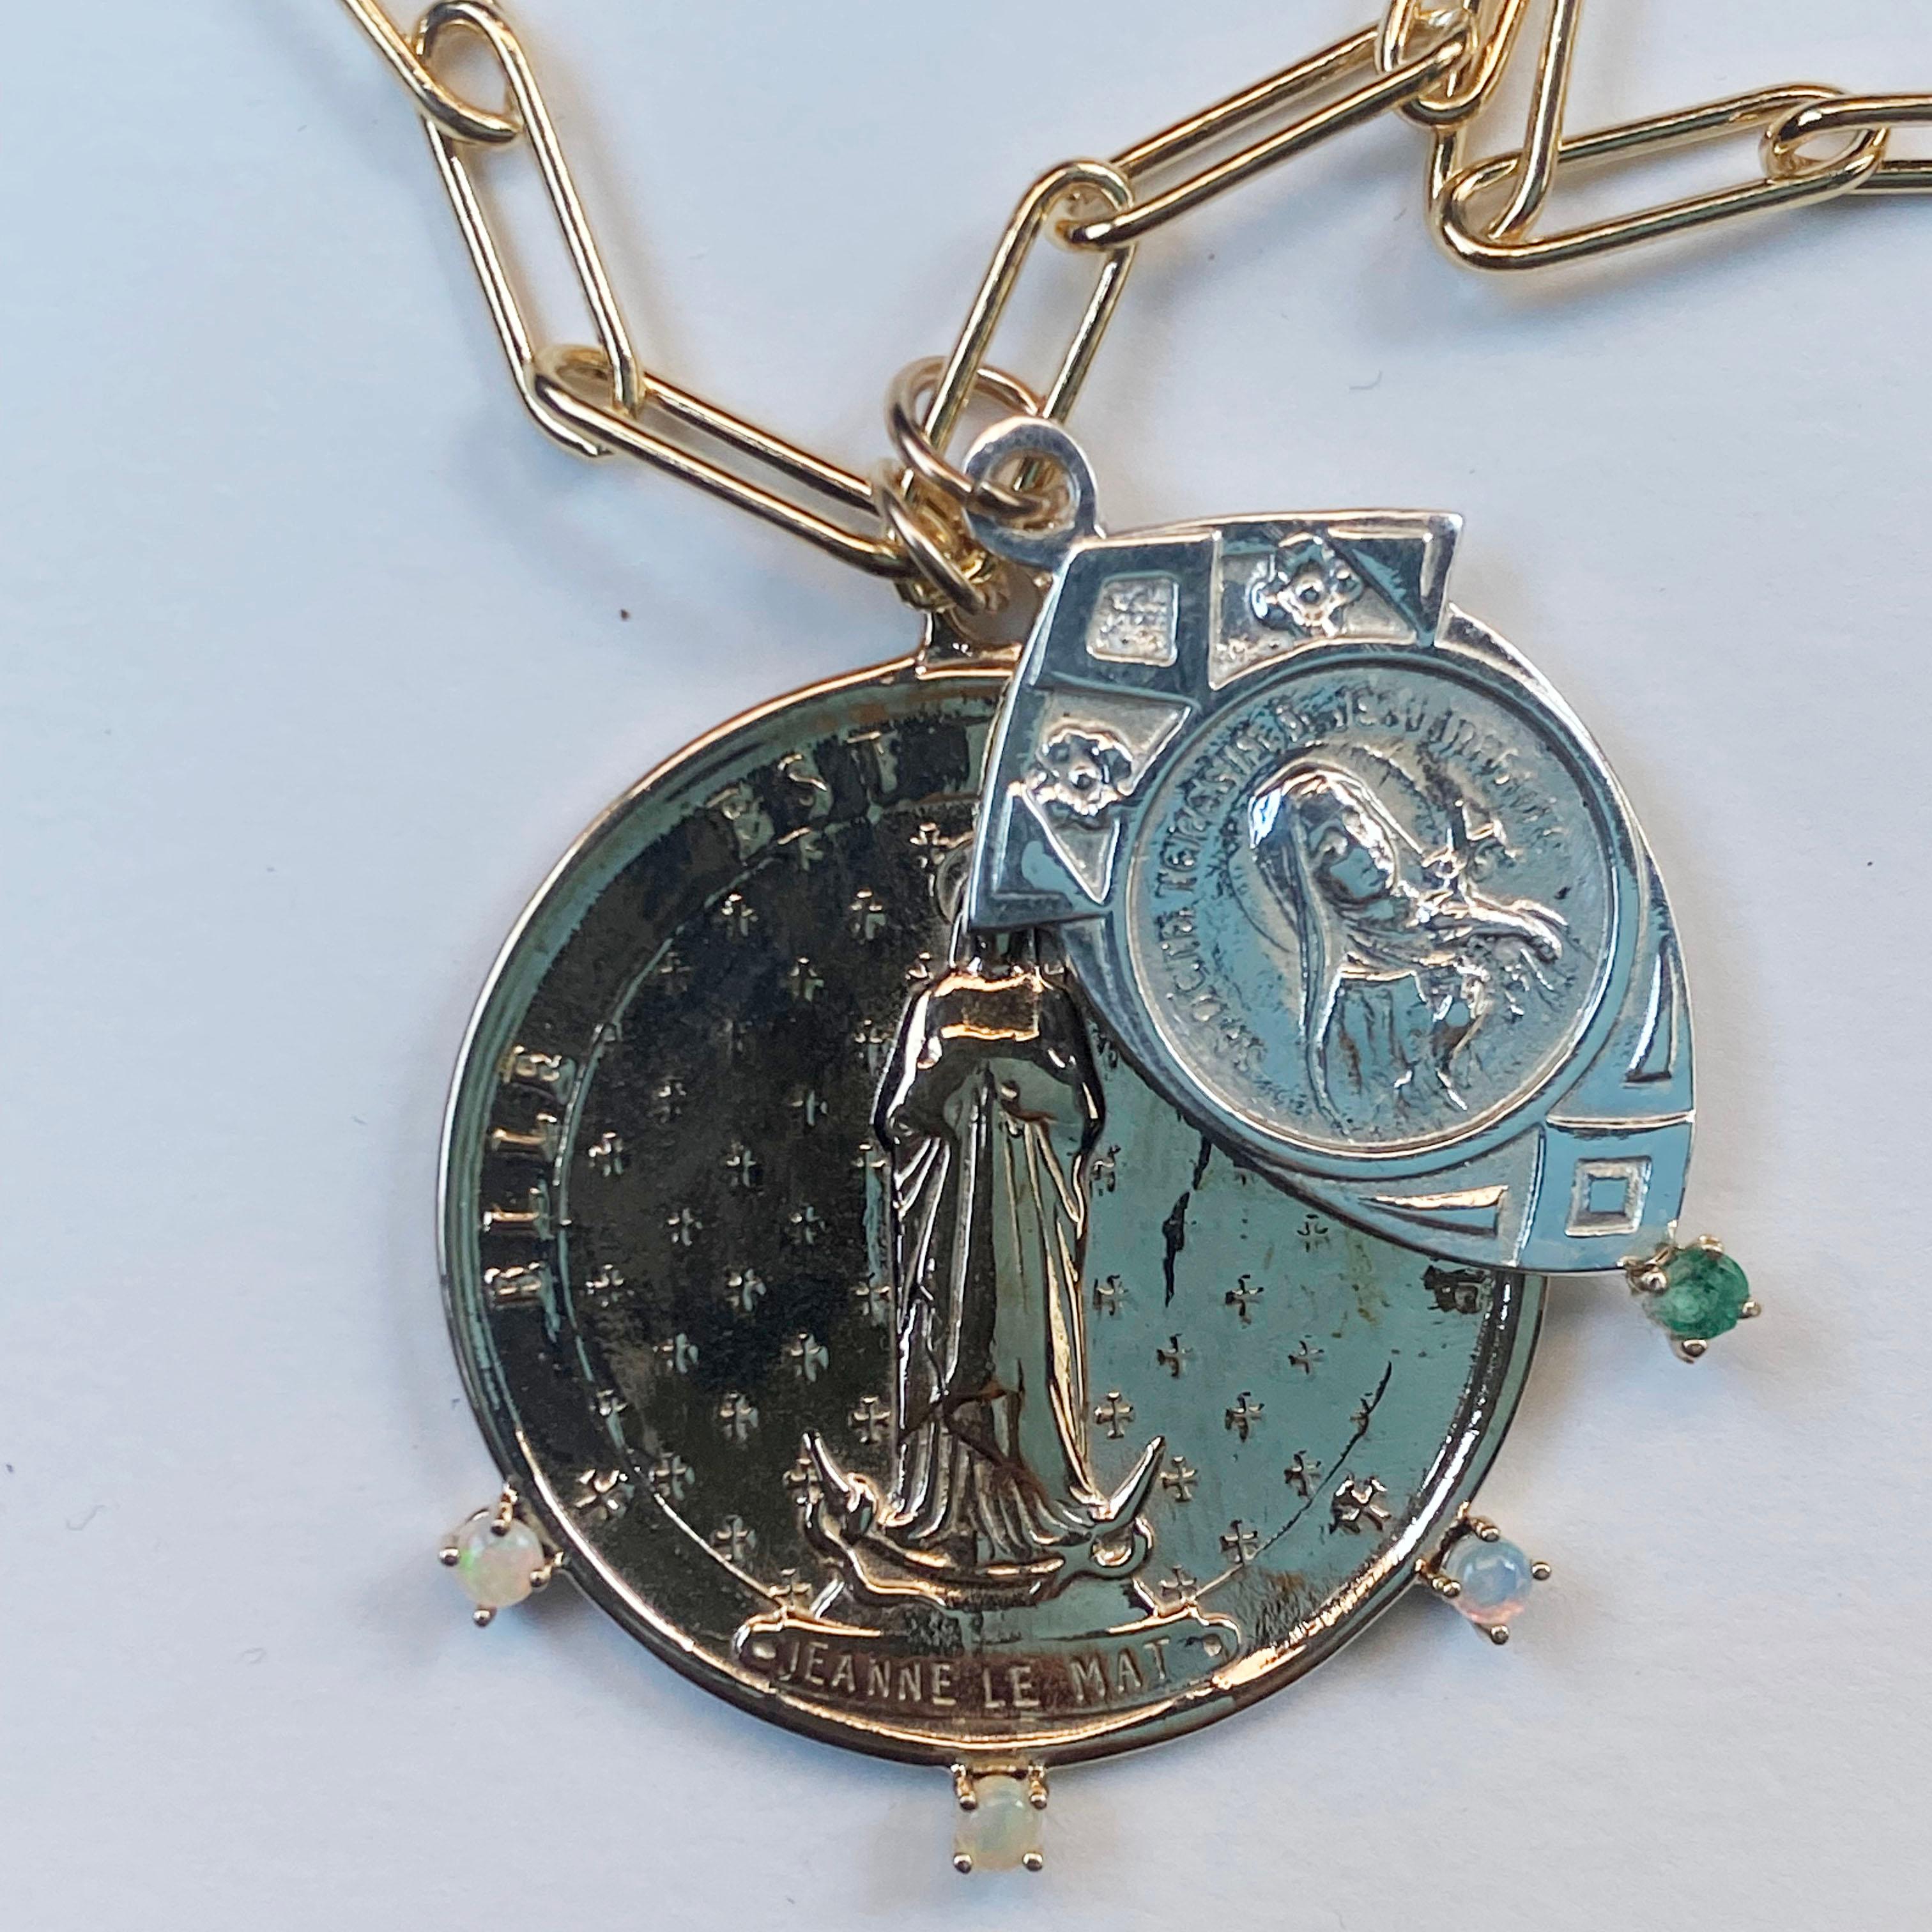 Kette Halskette mit zwei Medaillen Die Runde in Bronze hat 3 Opale und die silberne Medaille hat eine  Smaragd, die Kette ist aus Gold gefertigt und in der Länge verstellbar,  28